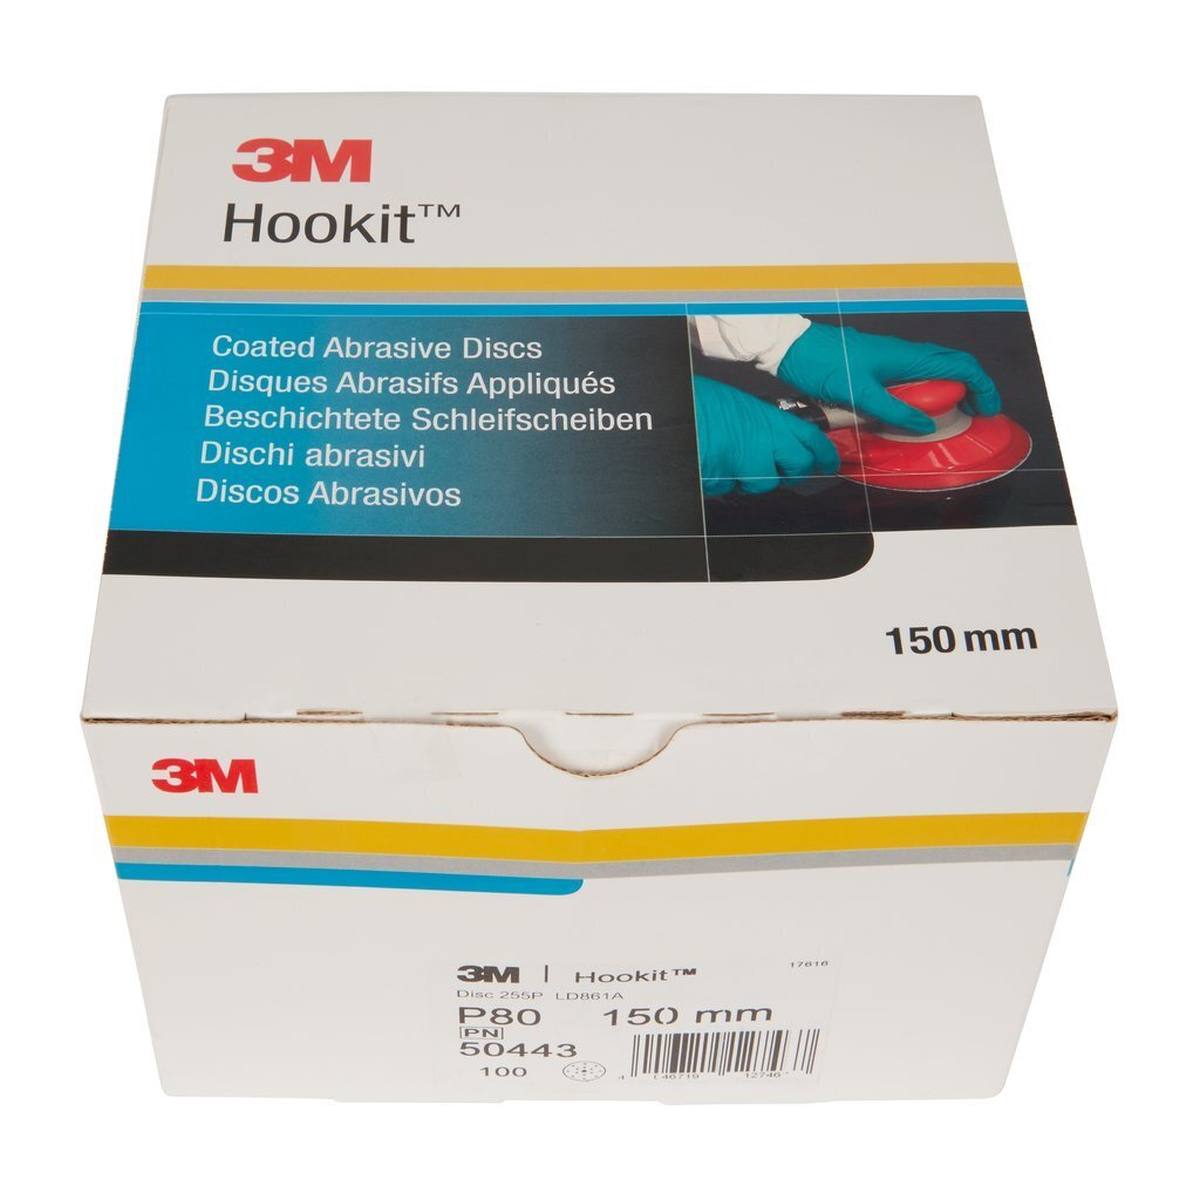 3M Hookit Gold Premium 255P+, 150 mm, P80, 15 fori #50443